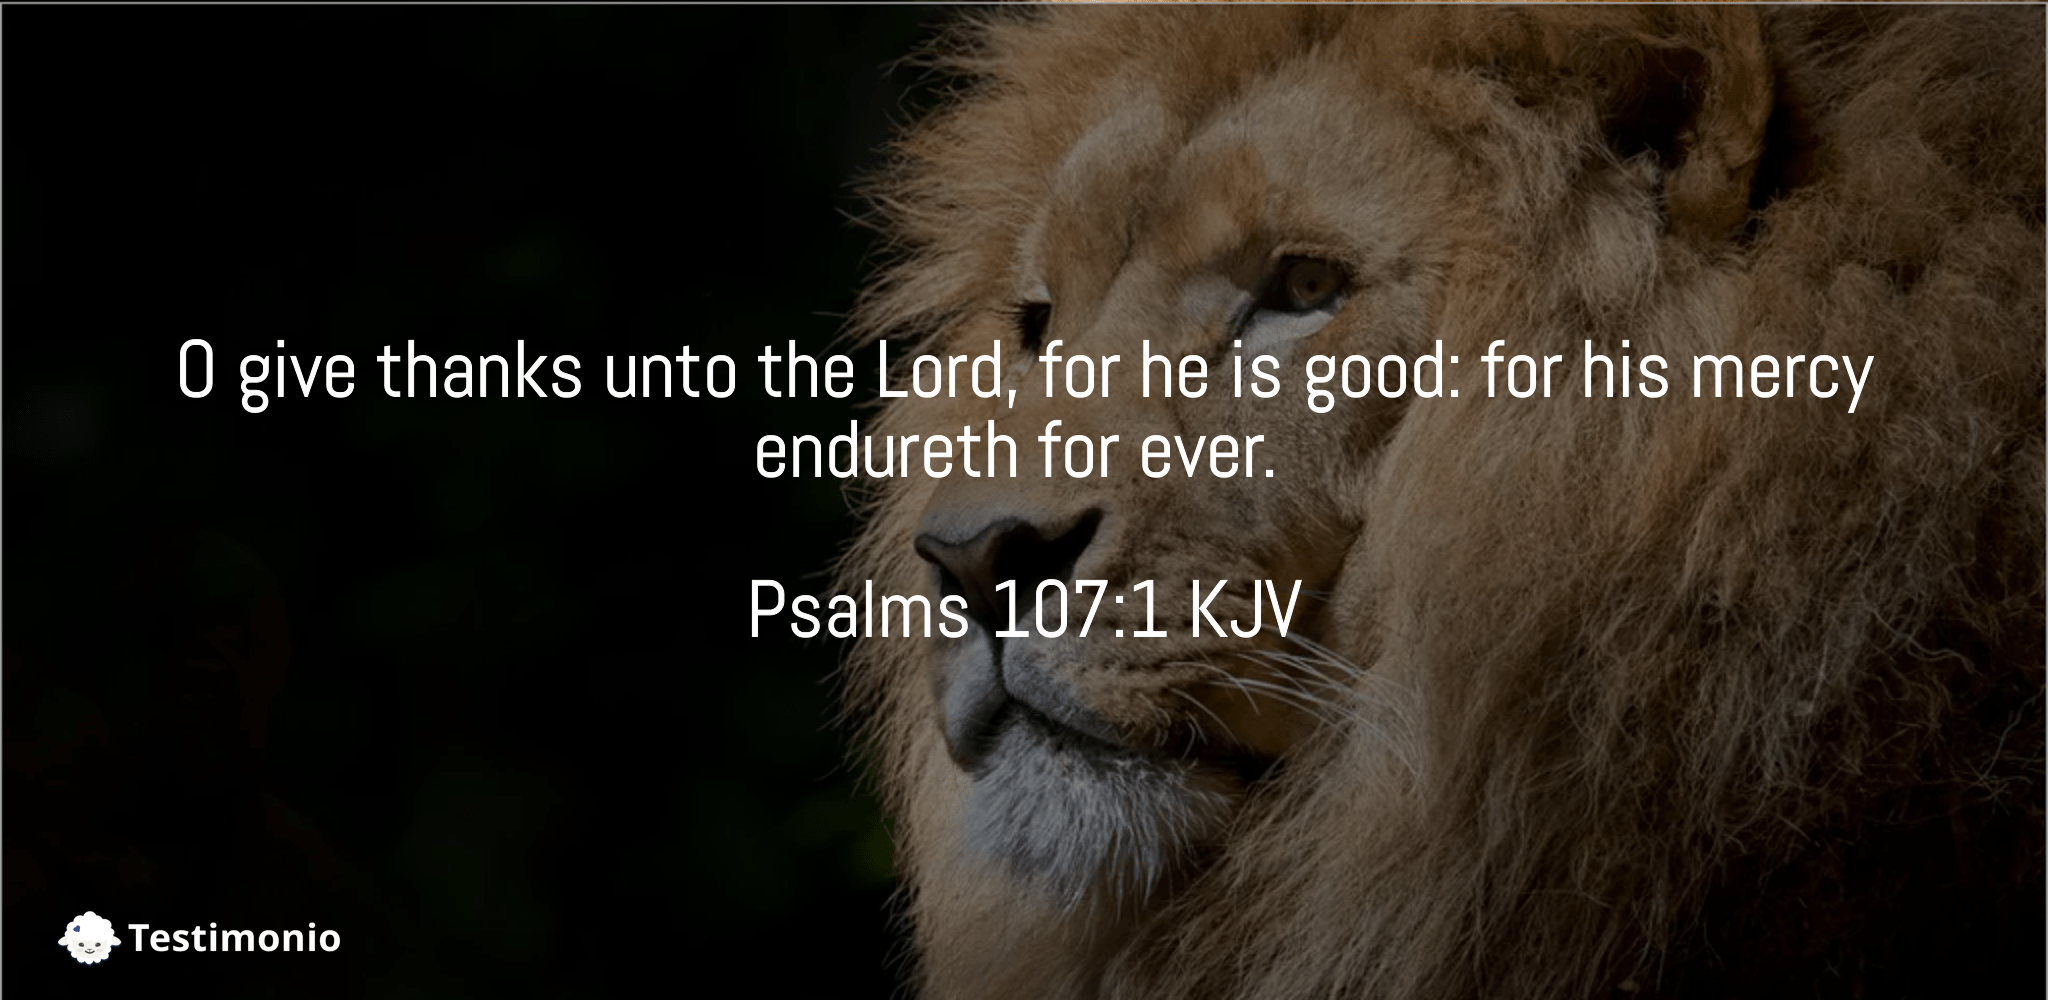 Psalms 107:1